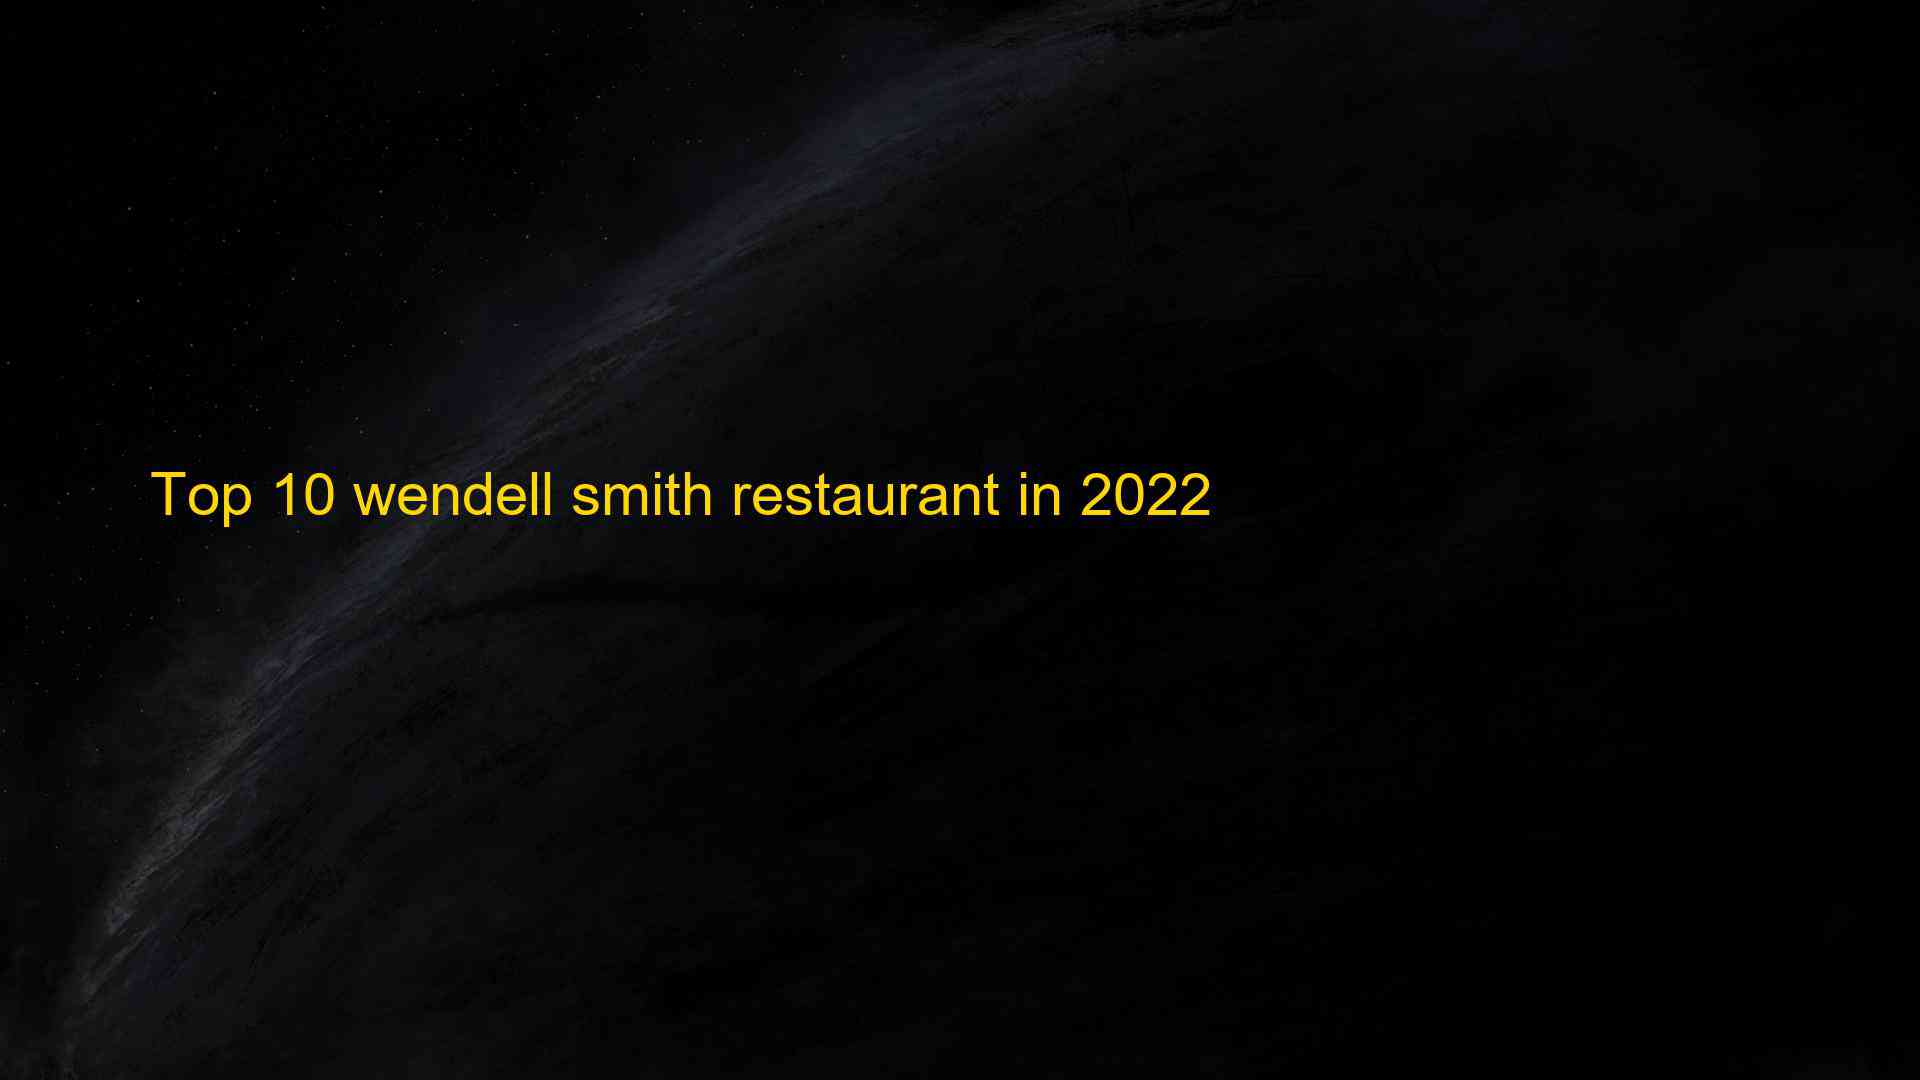 Top 10 wendell smith restaurant in 2022 1662841938